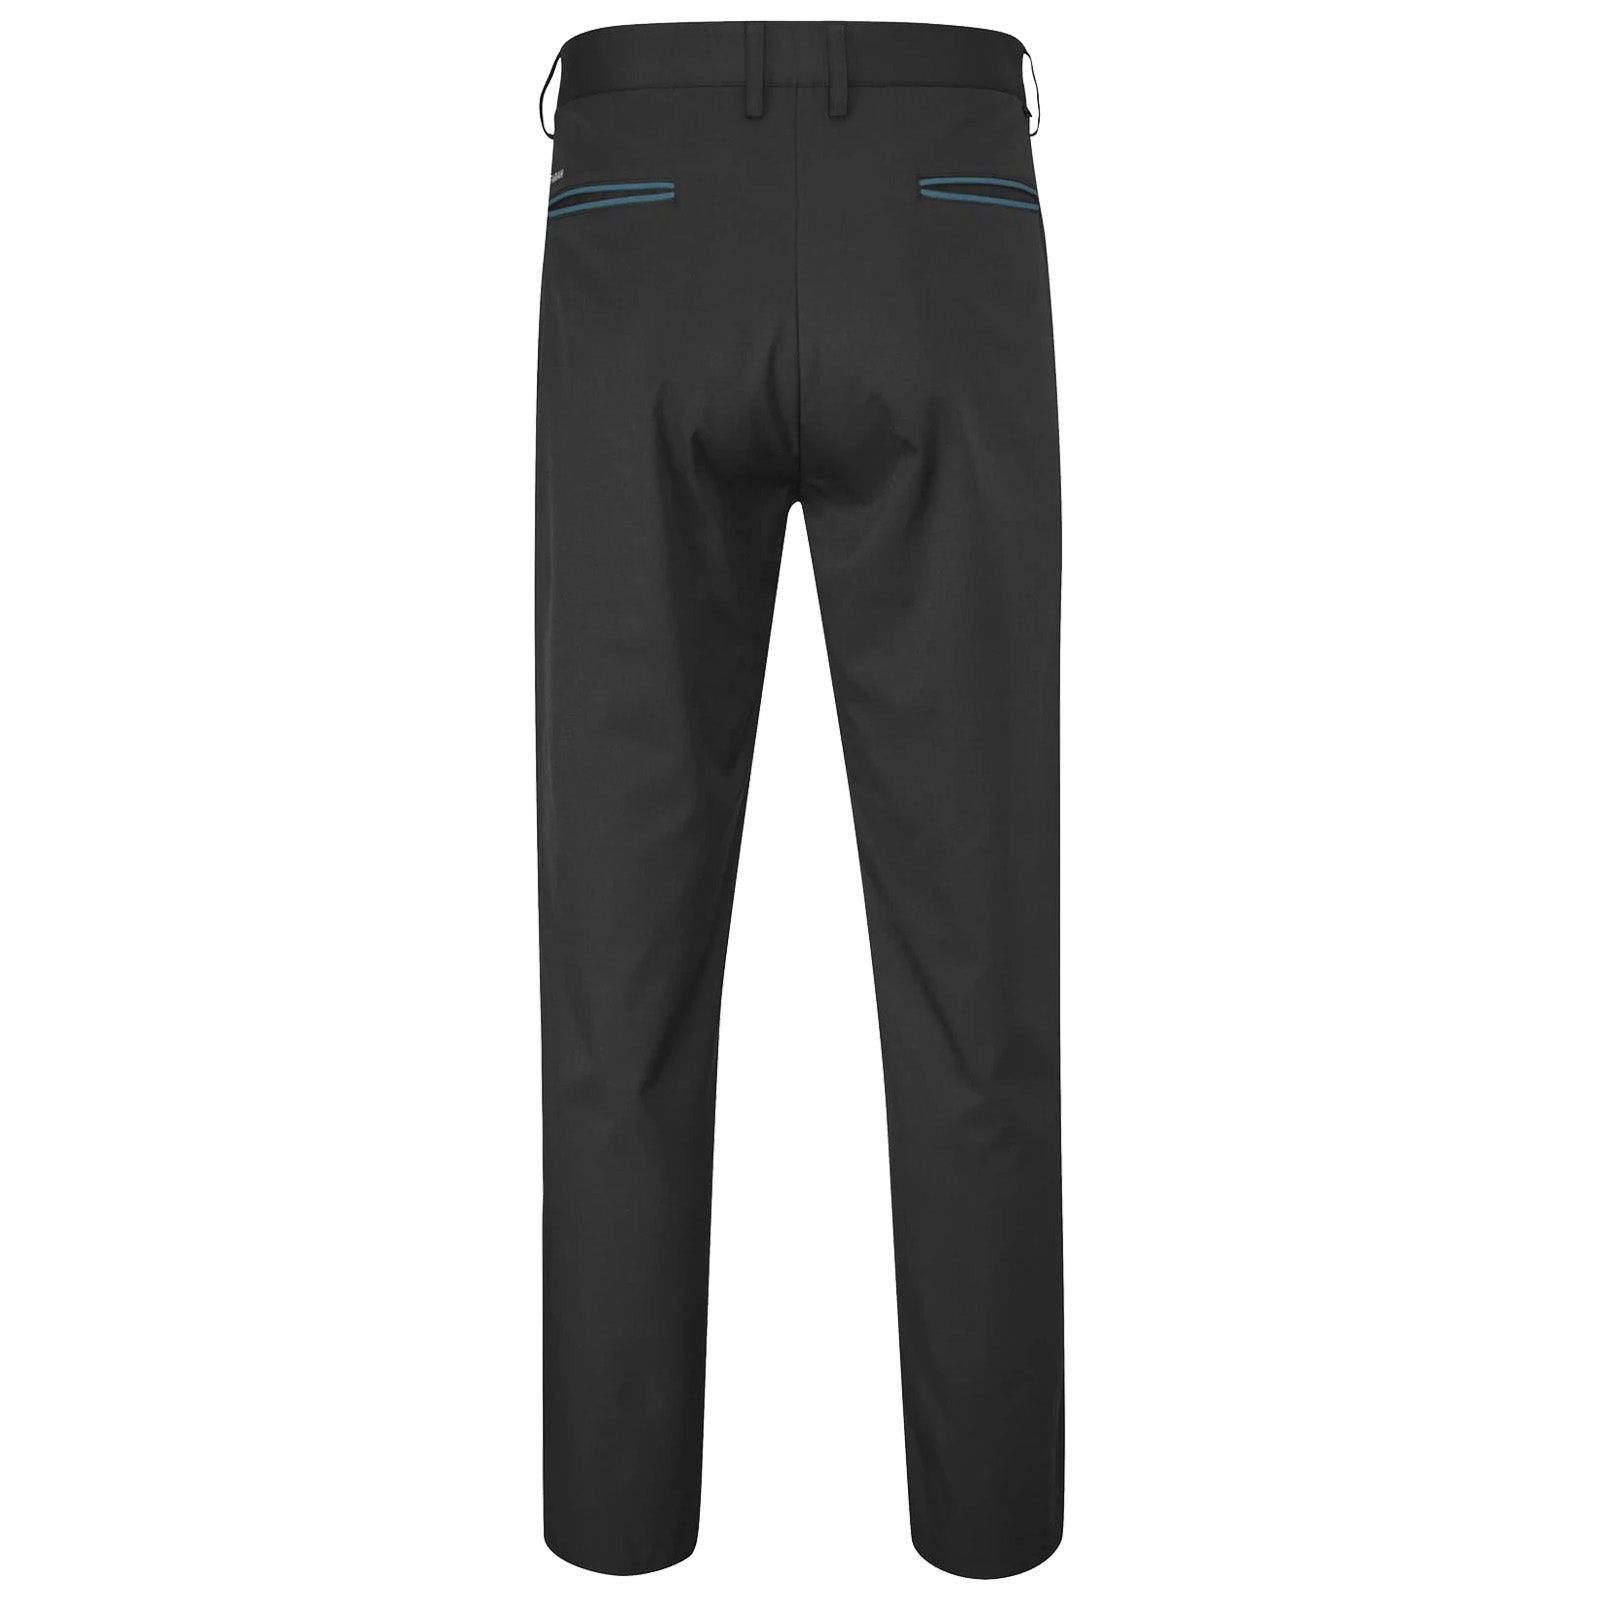 FARAH Men's Elm Cord Trouser, 223 Beige, 36W / 32L at Amazon Men's Clothing  store